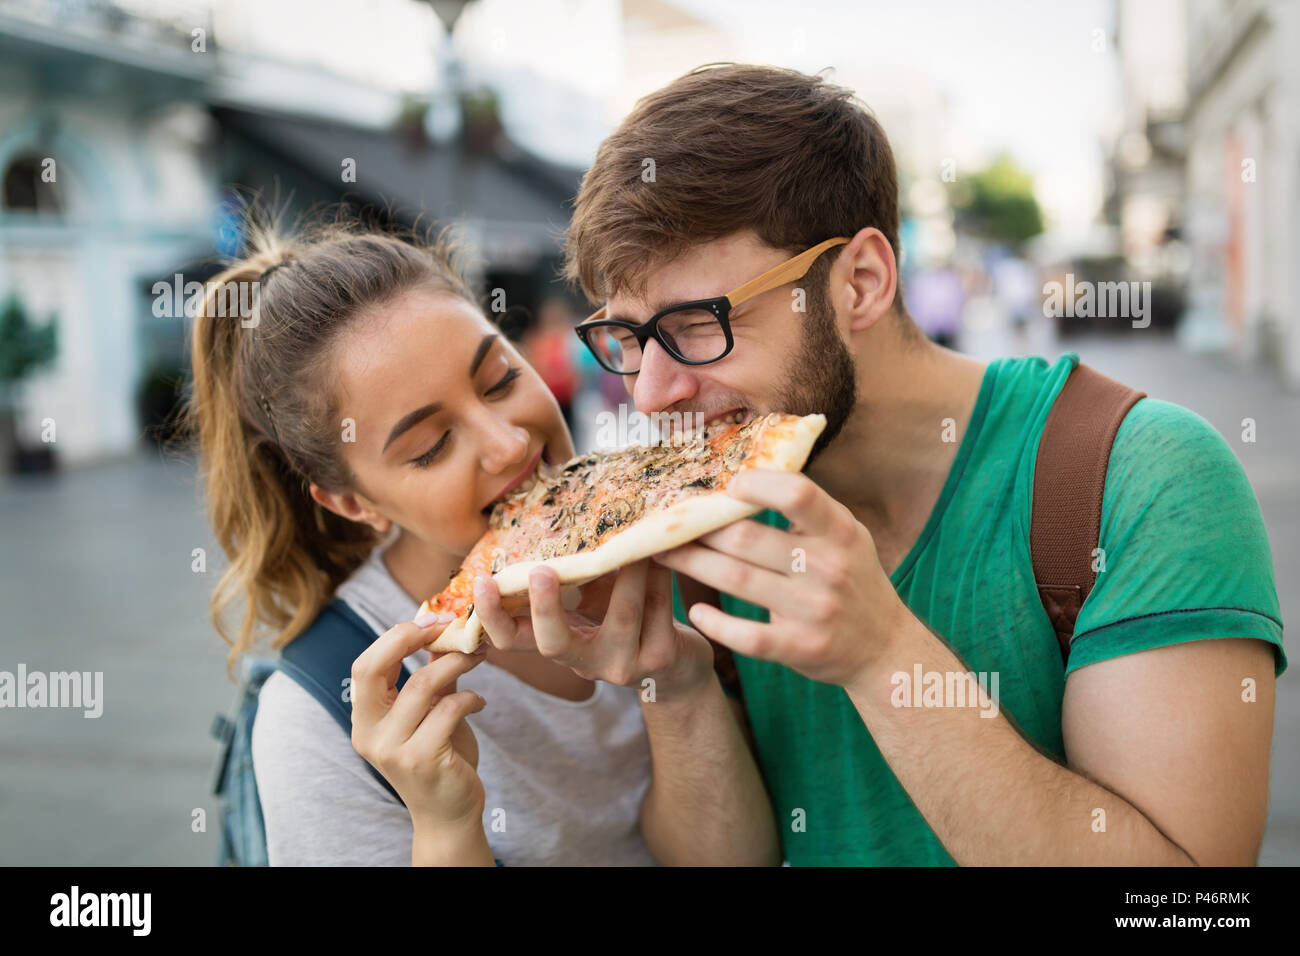 Groupe de gens heureux eating pizza outdoors Banque D'Images